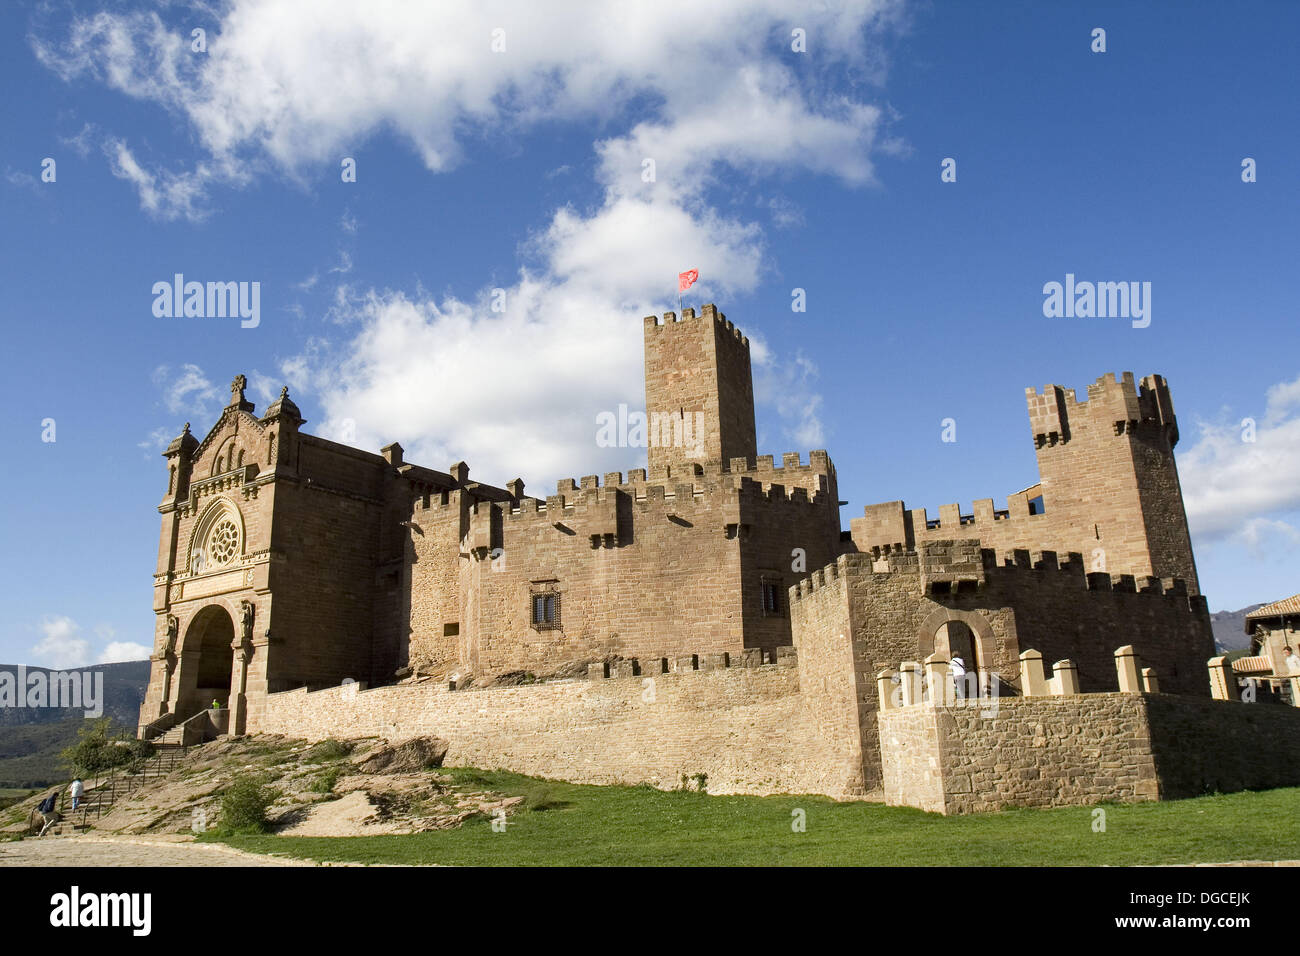 Castillo medieval de Javier, Navarra. Lugar de nacimiento de San Francisco de Javier. Stock Photo